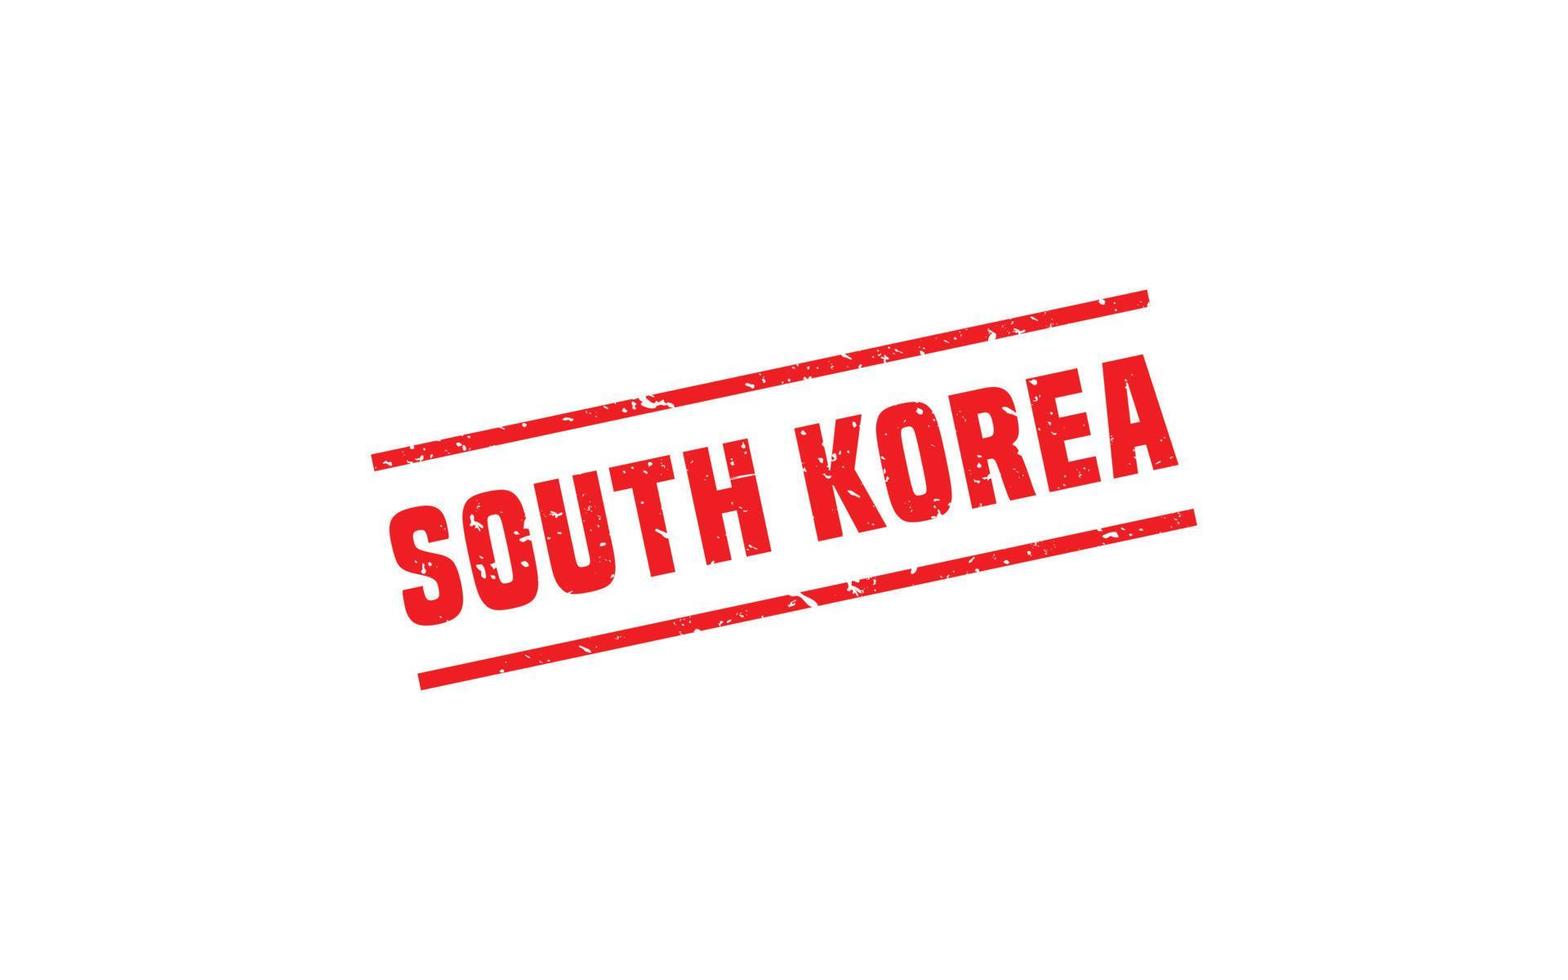 goma de sello de corea del sur con estilo grunge sobre fondo blanco vector